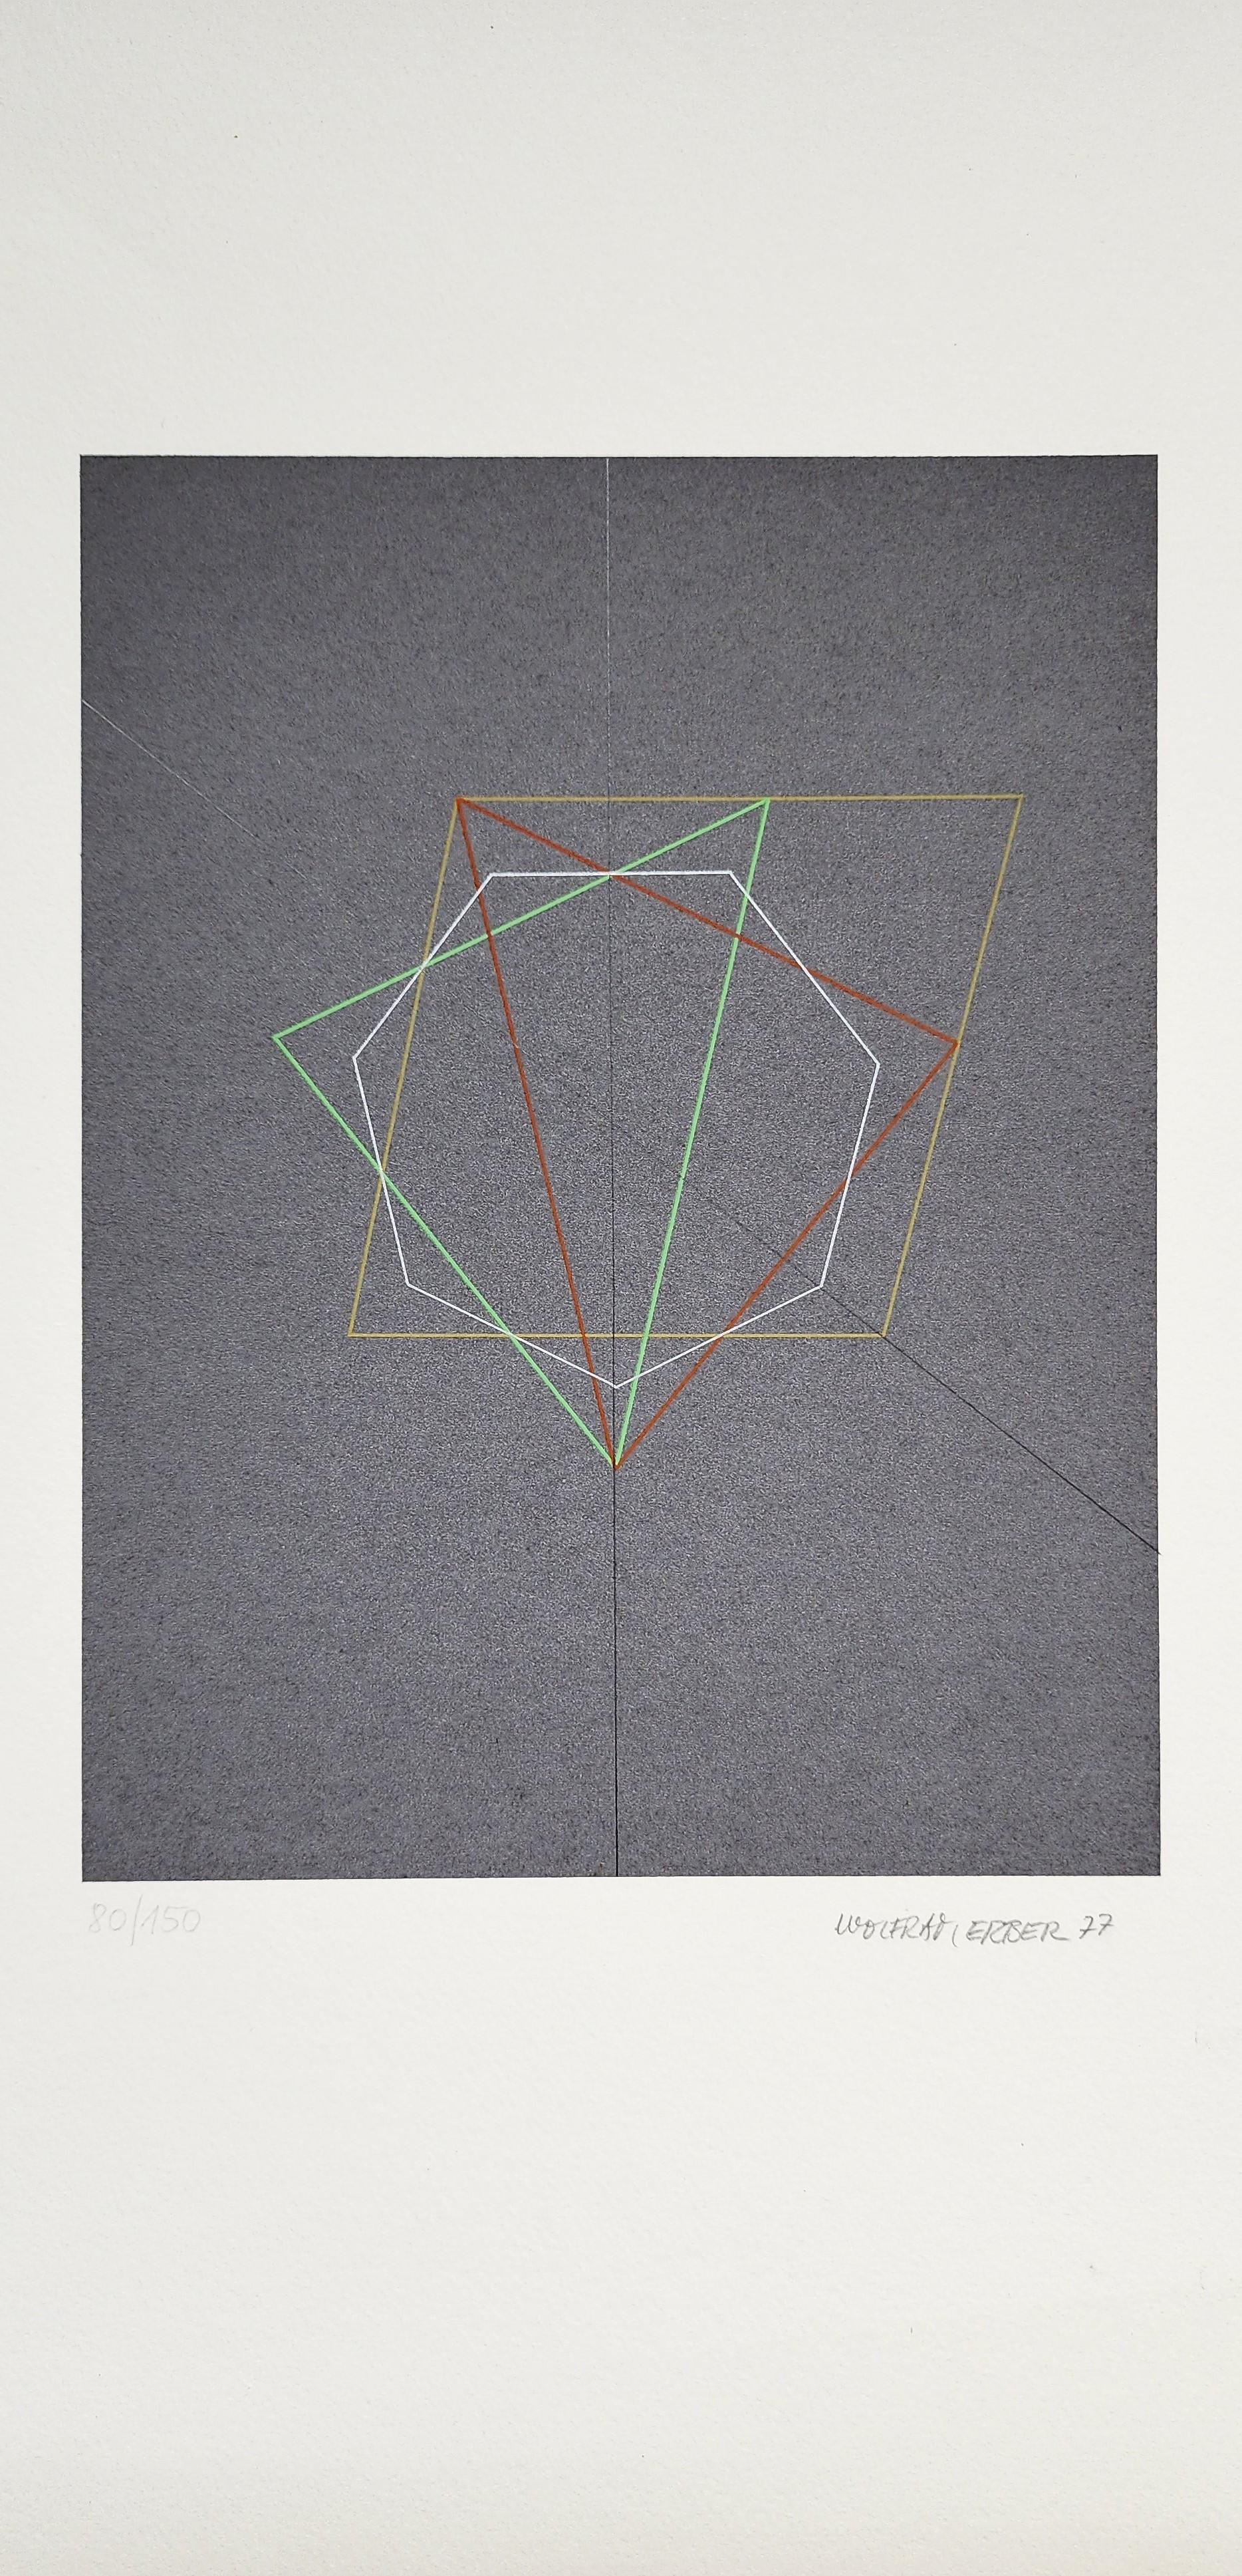 Geometrische Abstraktion ohne Titel – Print von Wolfram Erber